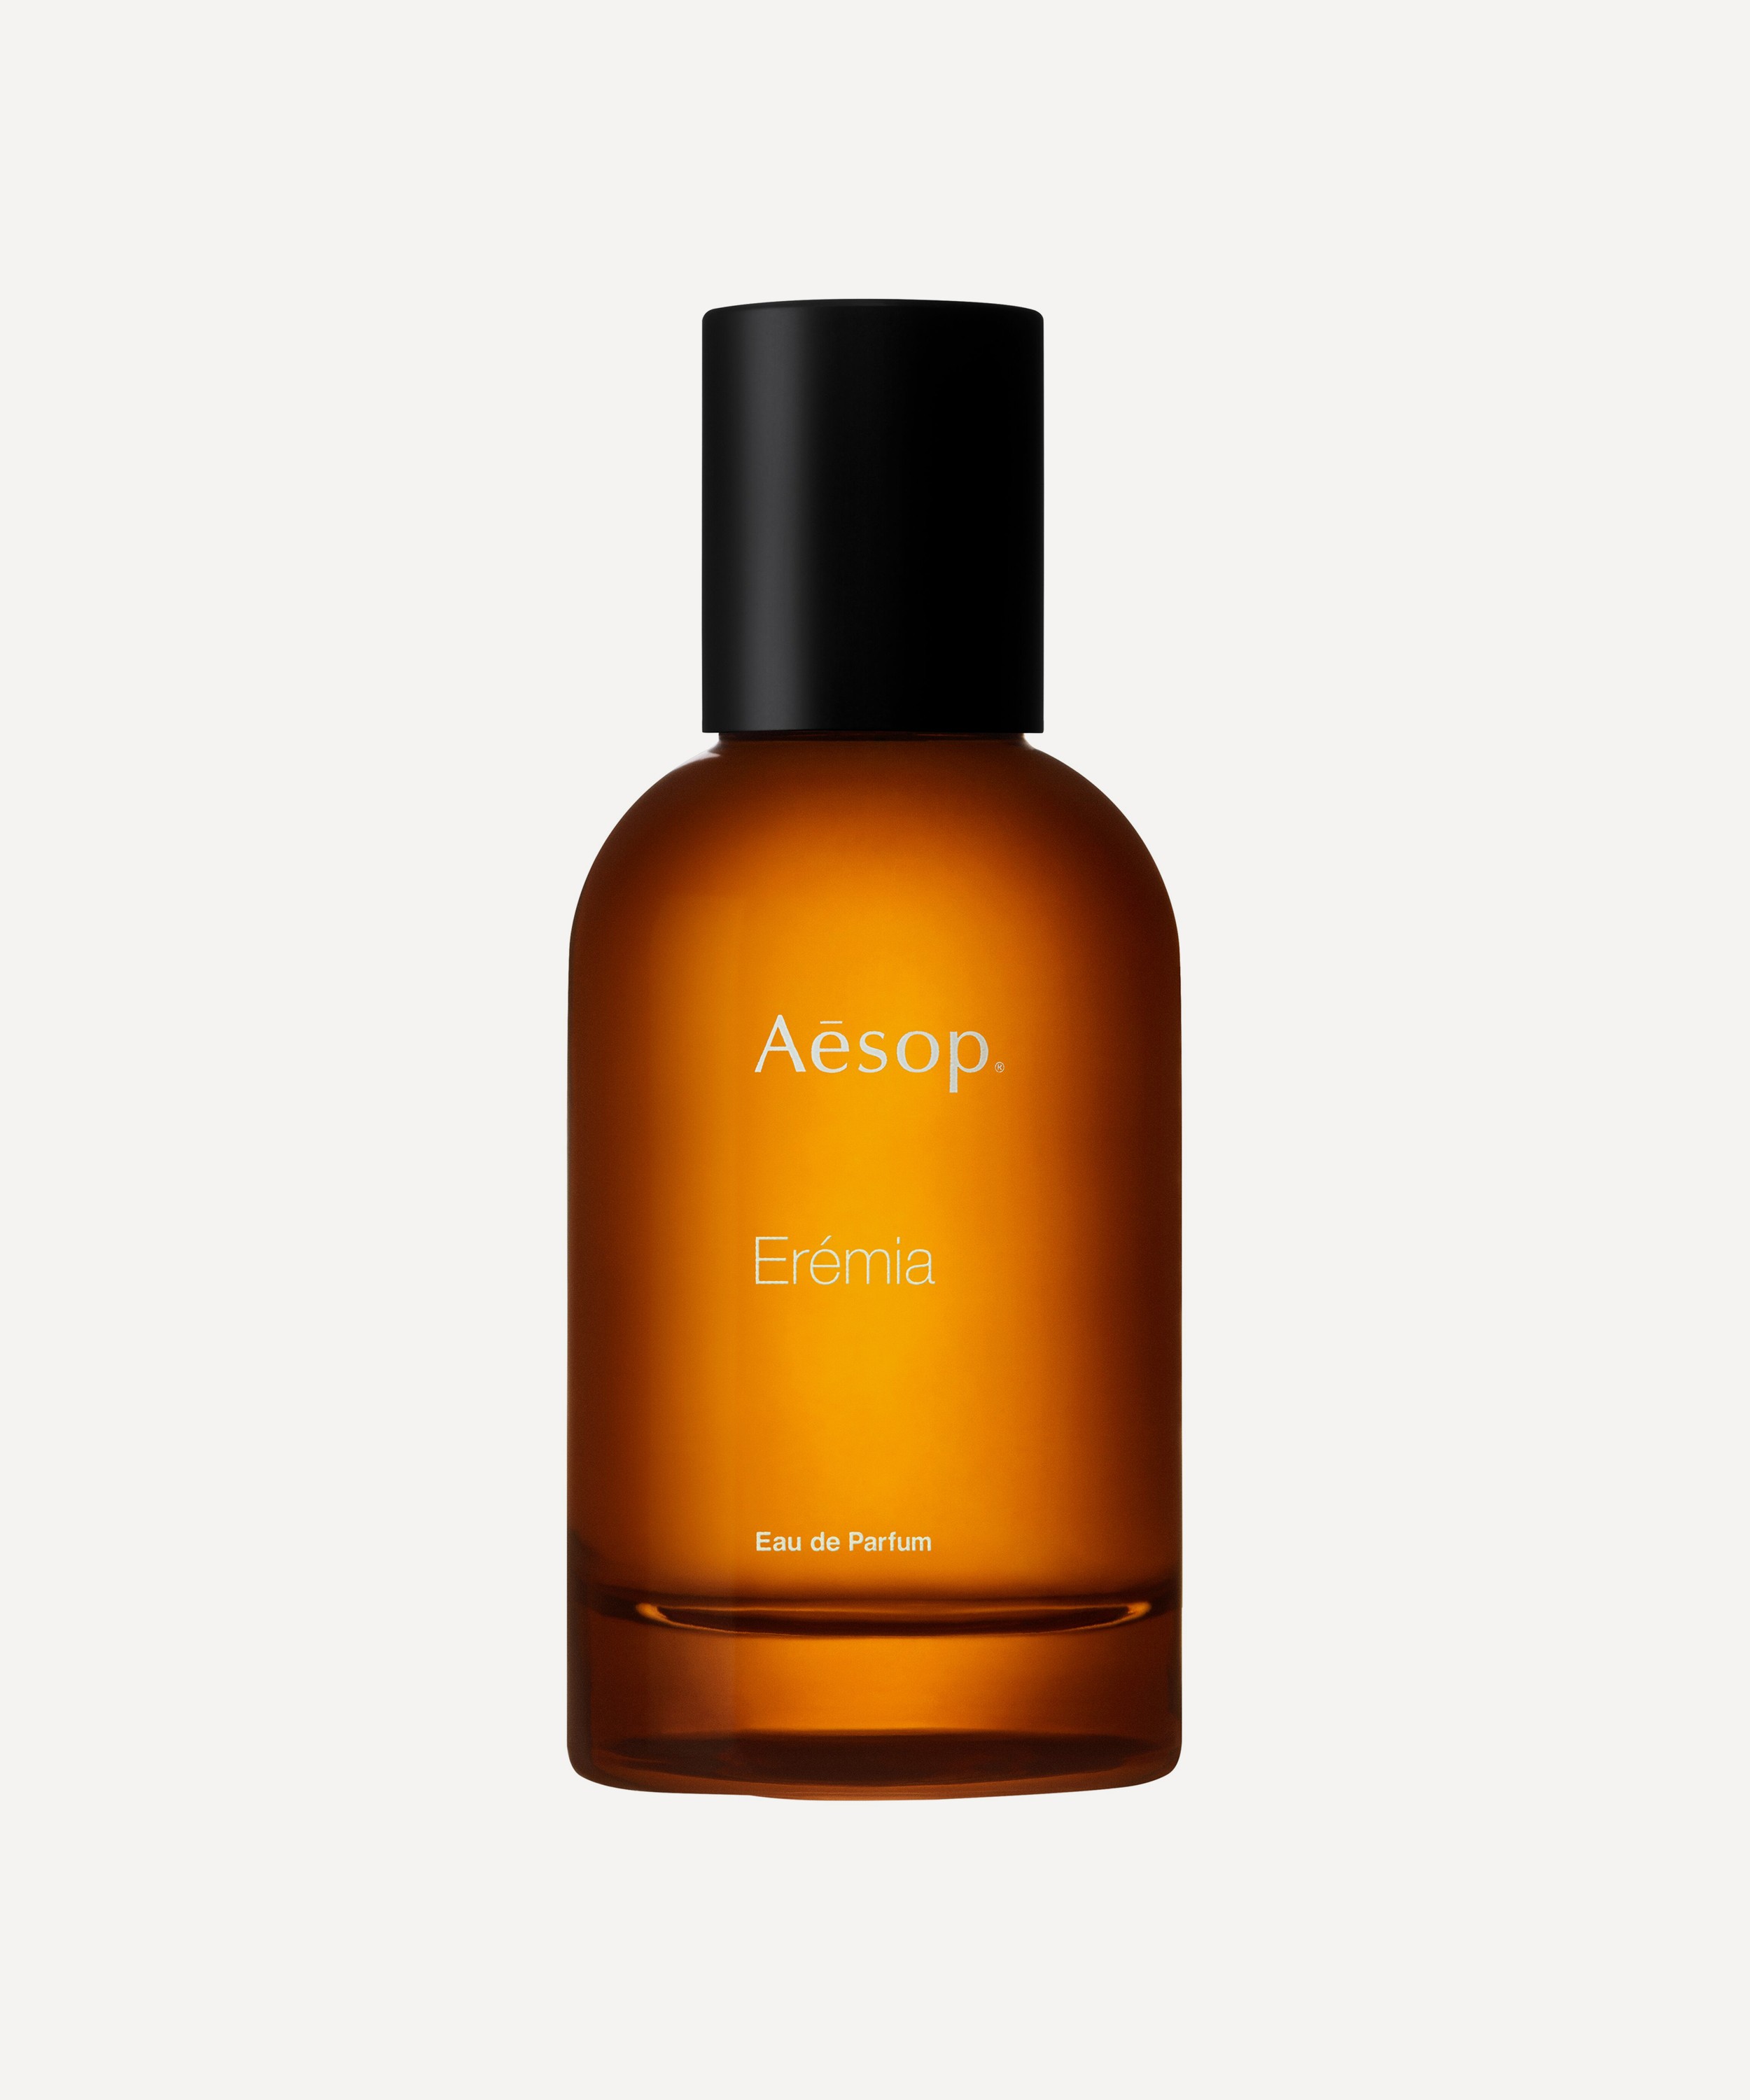 Aesop - Erémia Eau de Parfum 50ml